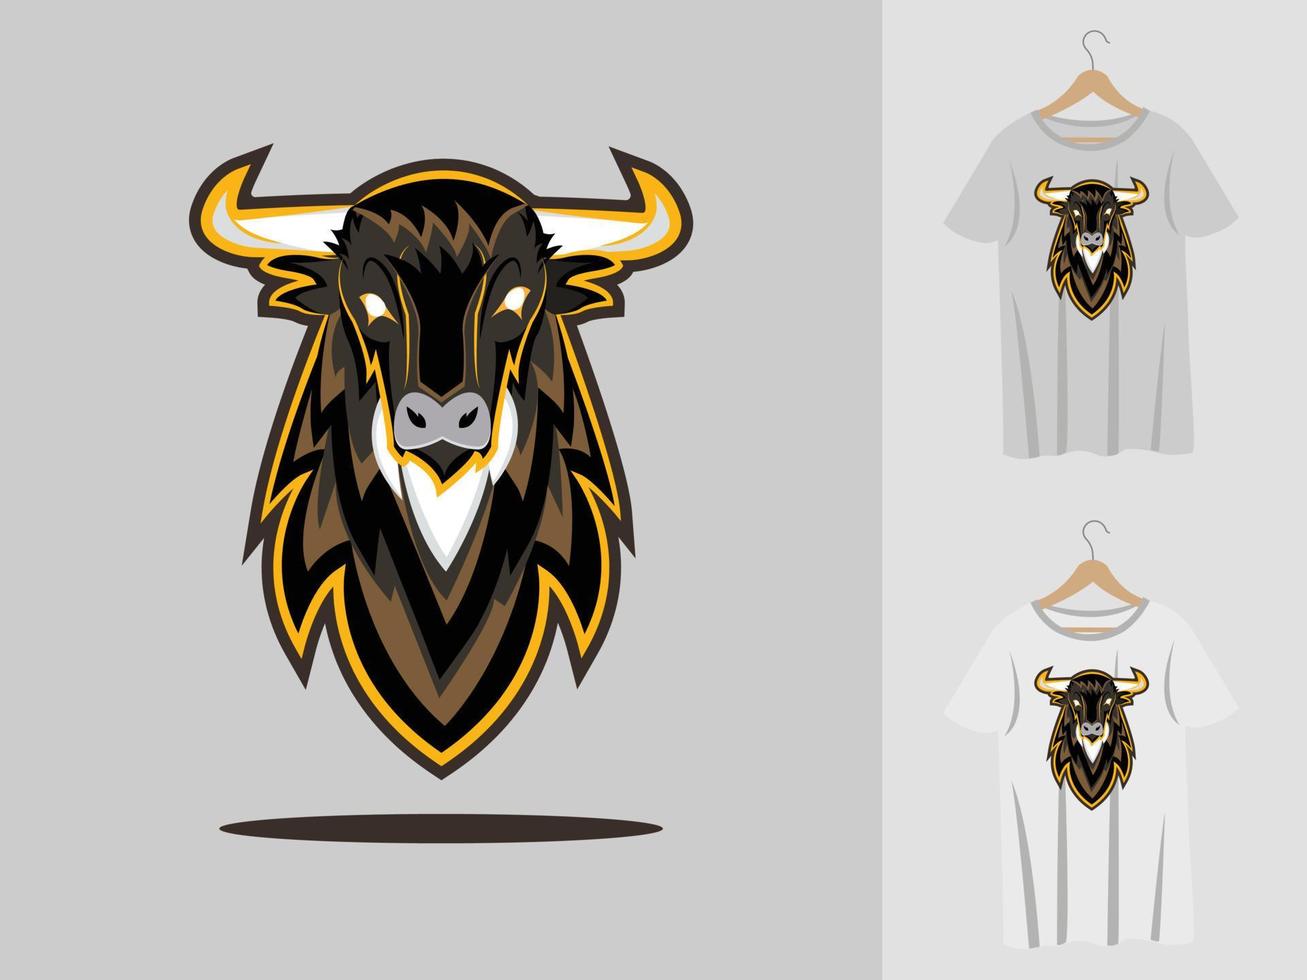 conception de mascotte de logo de bison avec t-shirt. illustration de tête de bison pour l'équipe sportive et t-shirt d'impression vecteur